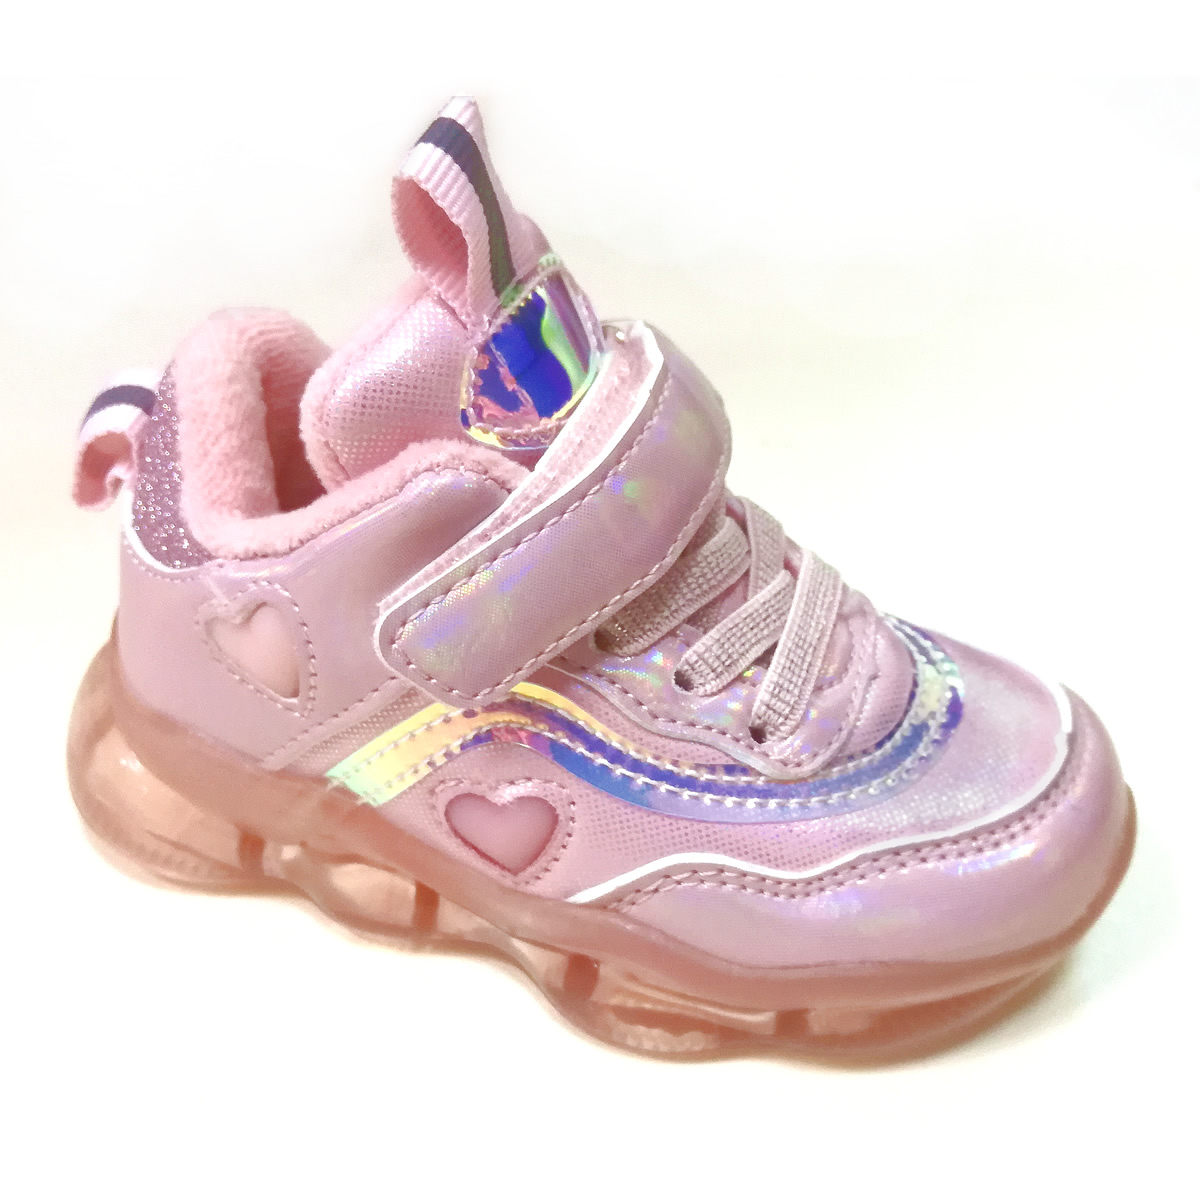 Дитячі кросівки для дівчинки, рожеві з підсвічуванням 23 розміру  (E-63 pink), Clibee